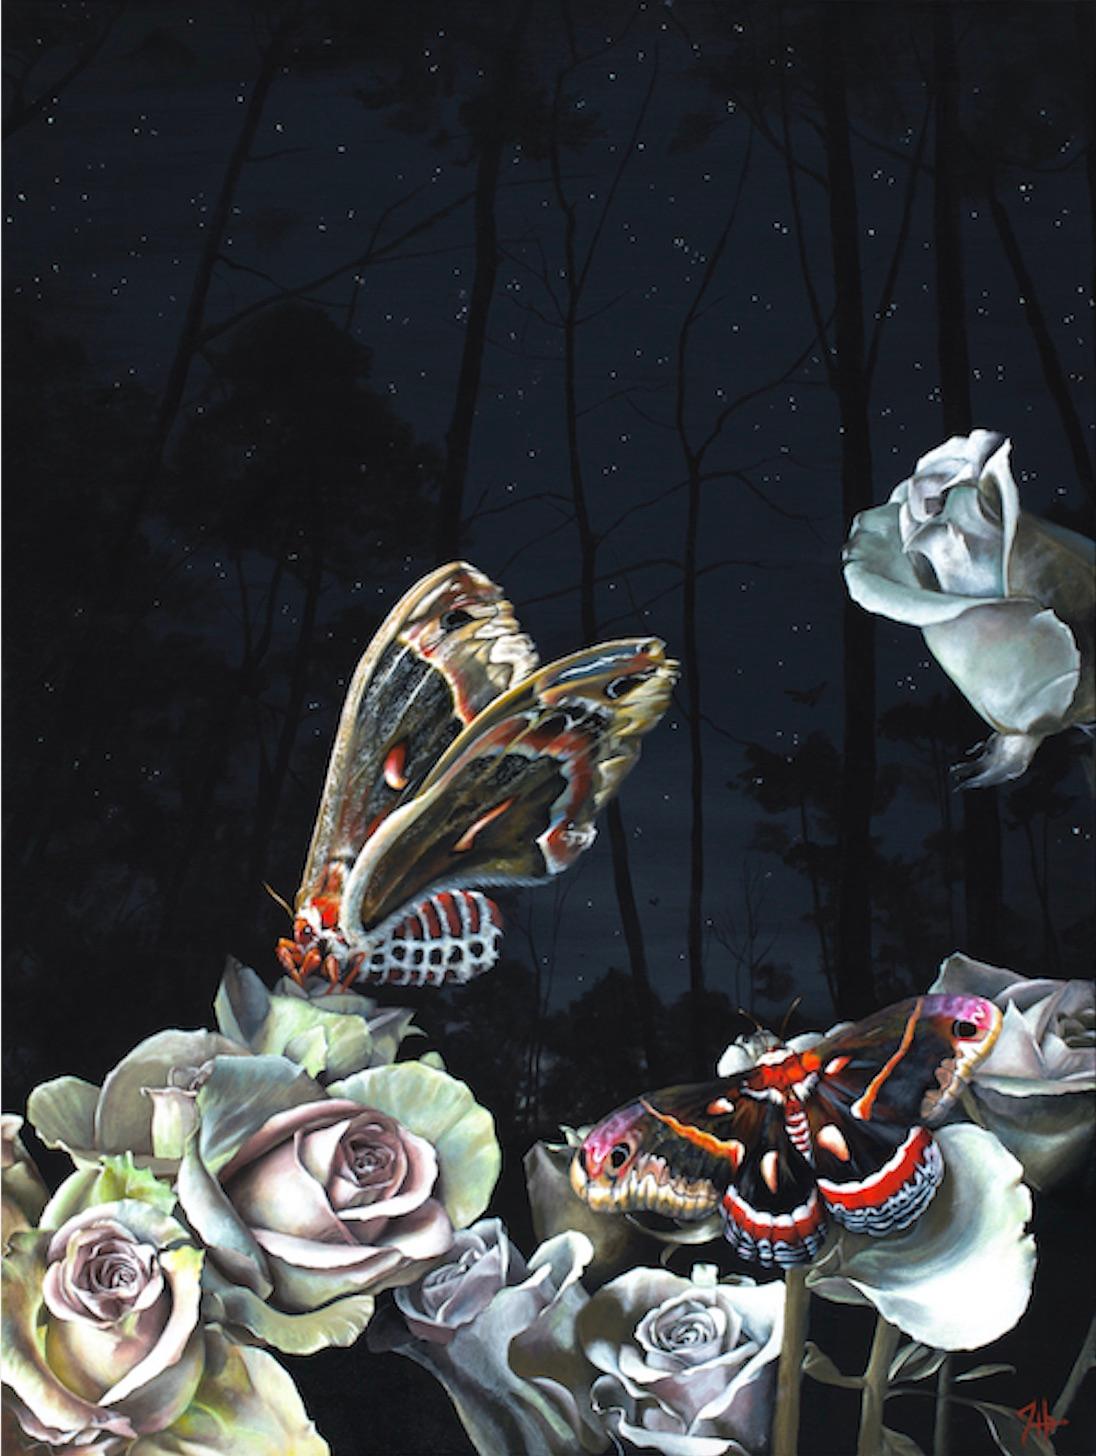 Certaines nuits au printemps - Peinture surréaliste originale de faune sauvage florale - Art moderne